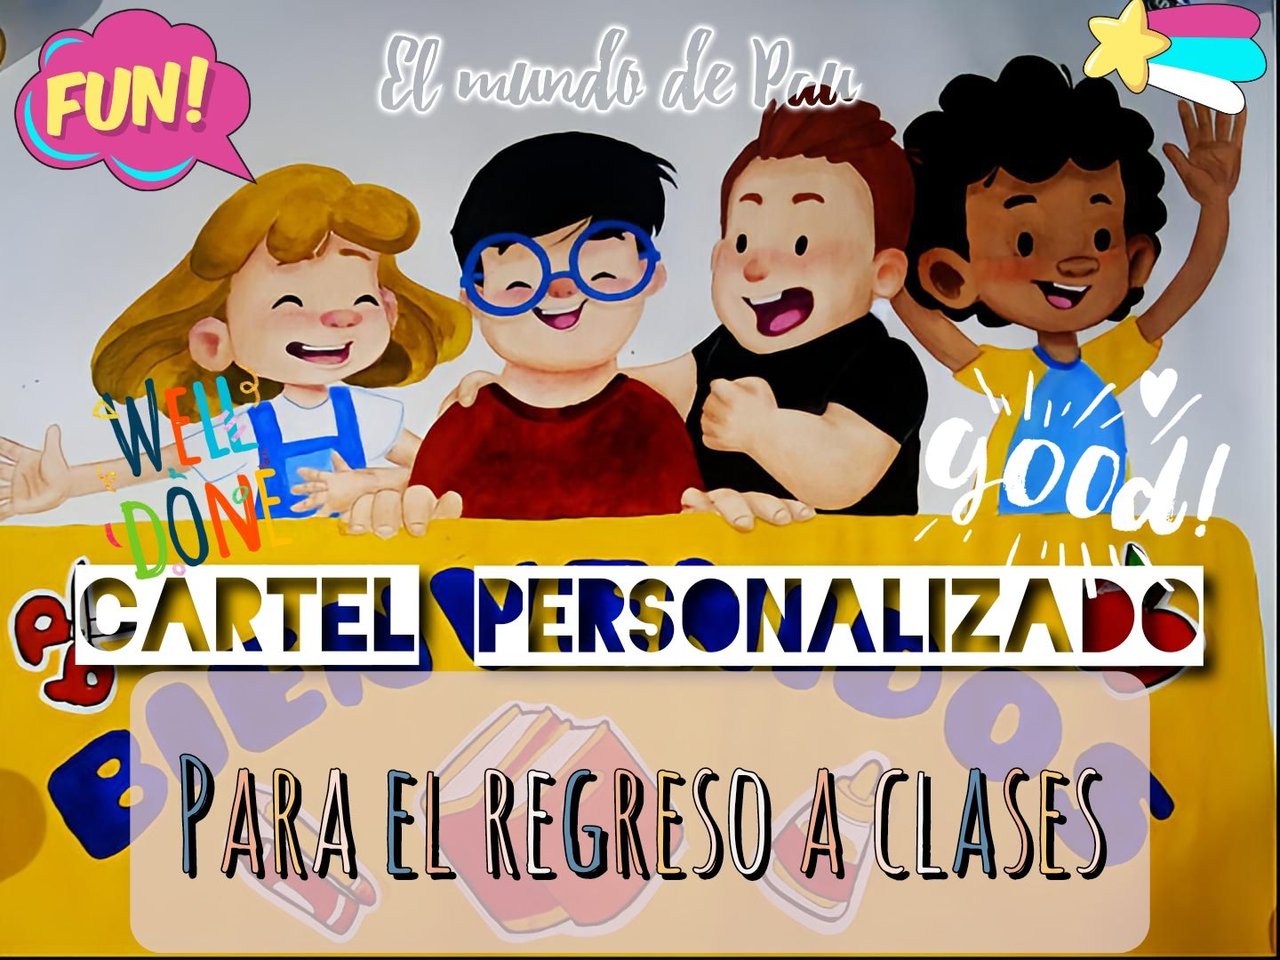 Esp/Ing] DEMOS LA BIENVENIDA: Cartel personalizado / LET'S GIVE A WELCOME:  Personalized poster